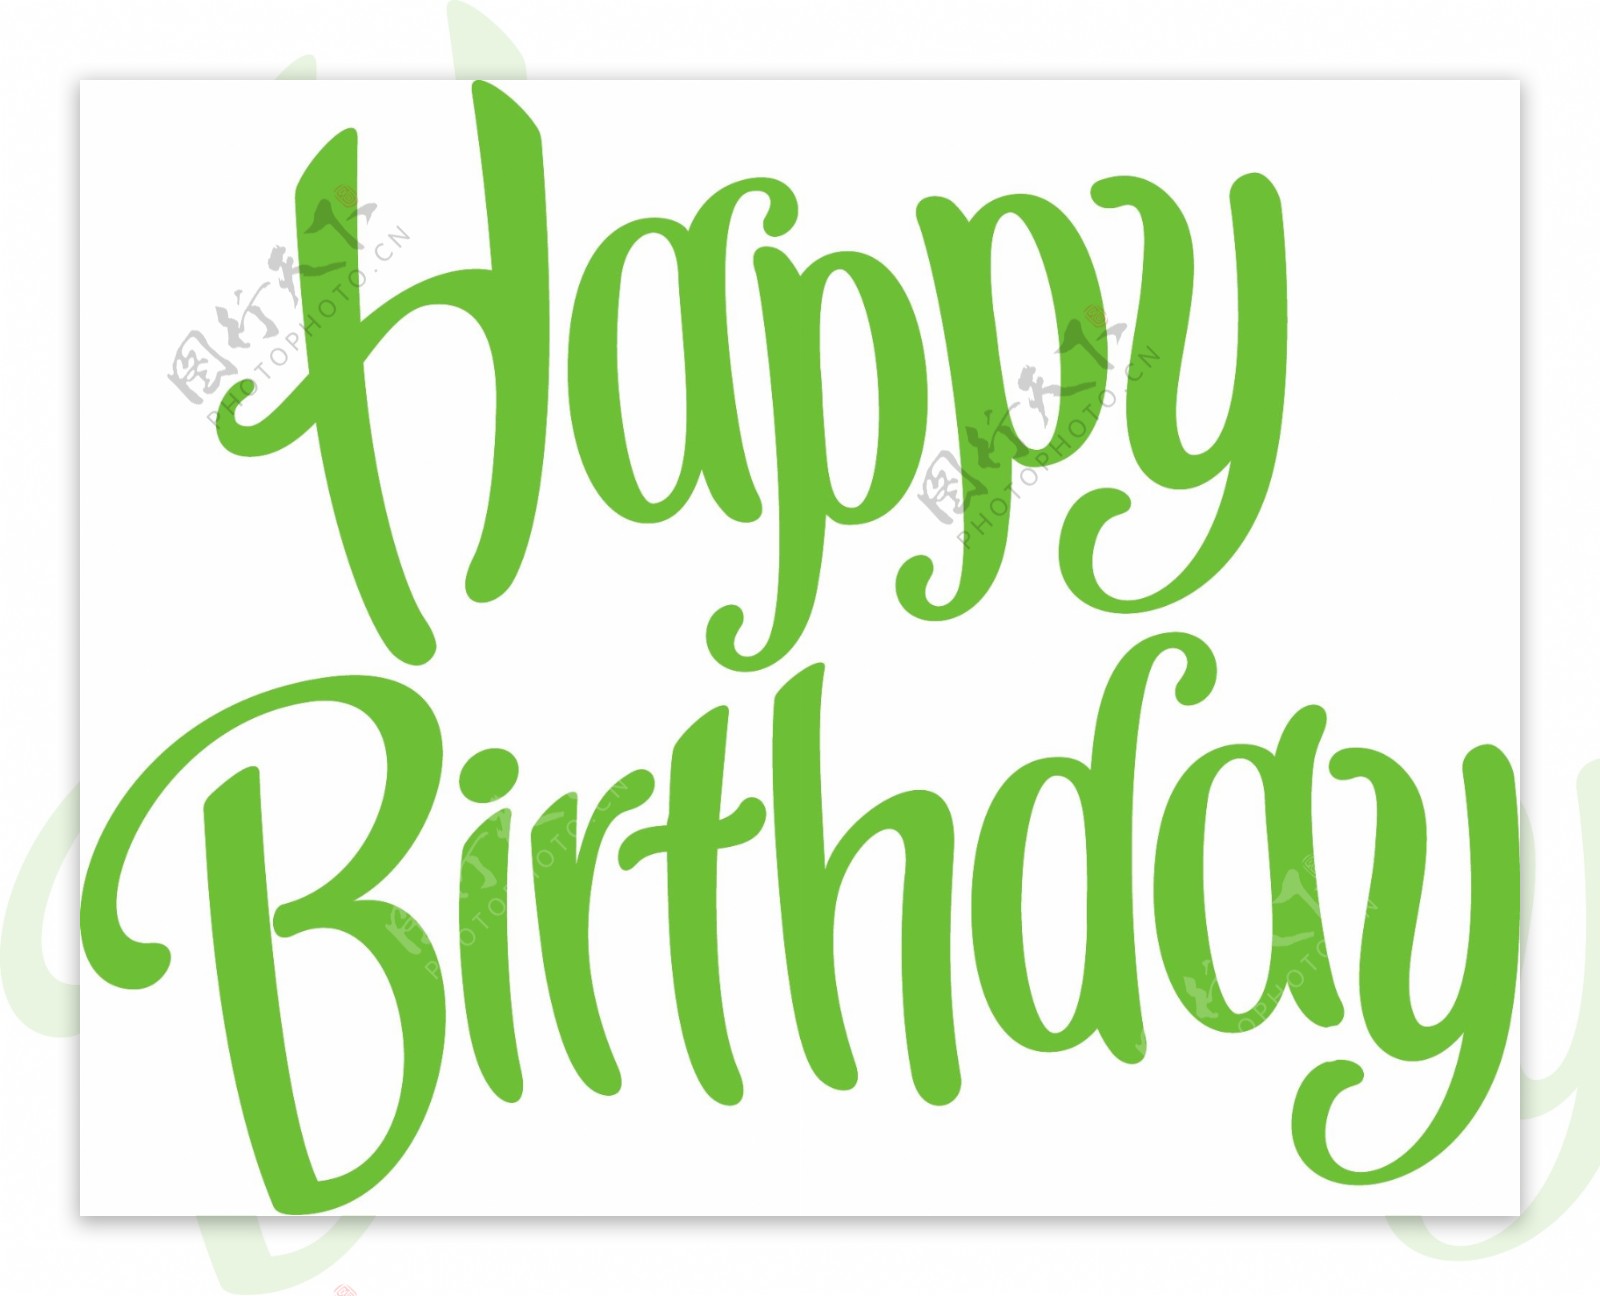 生日快乐绿色字体的矢量